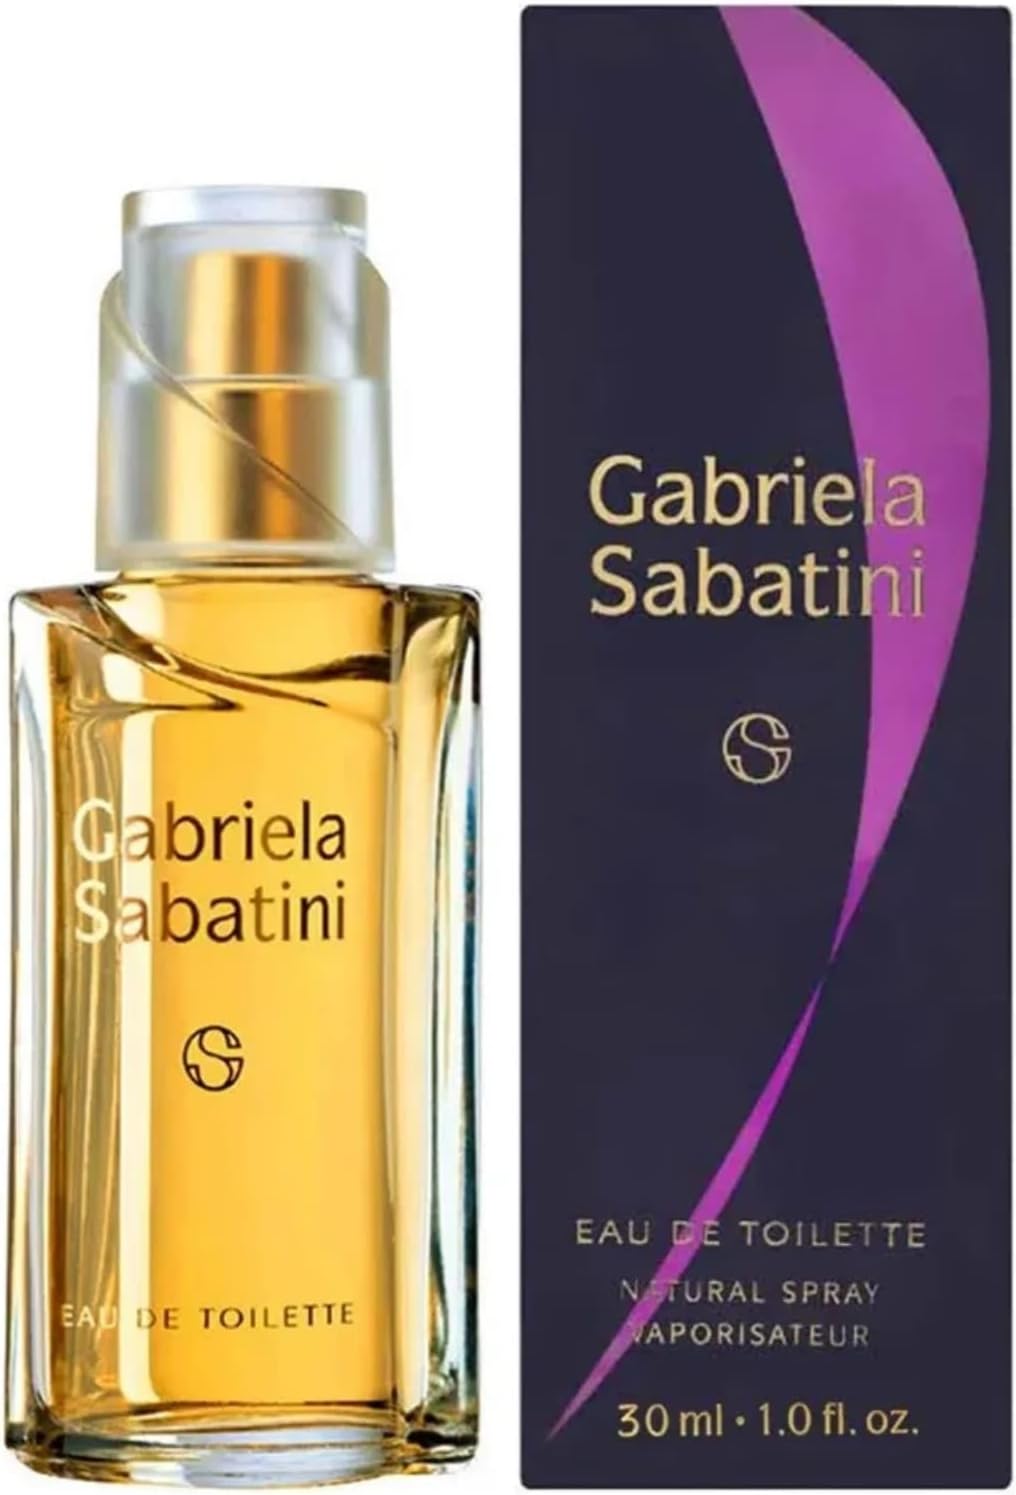 perfume feminino Gabriela Sabatini